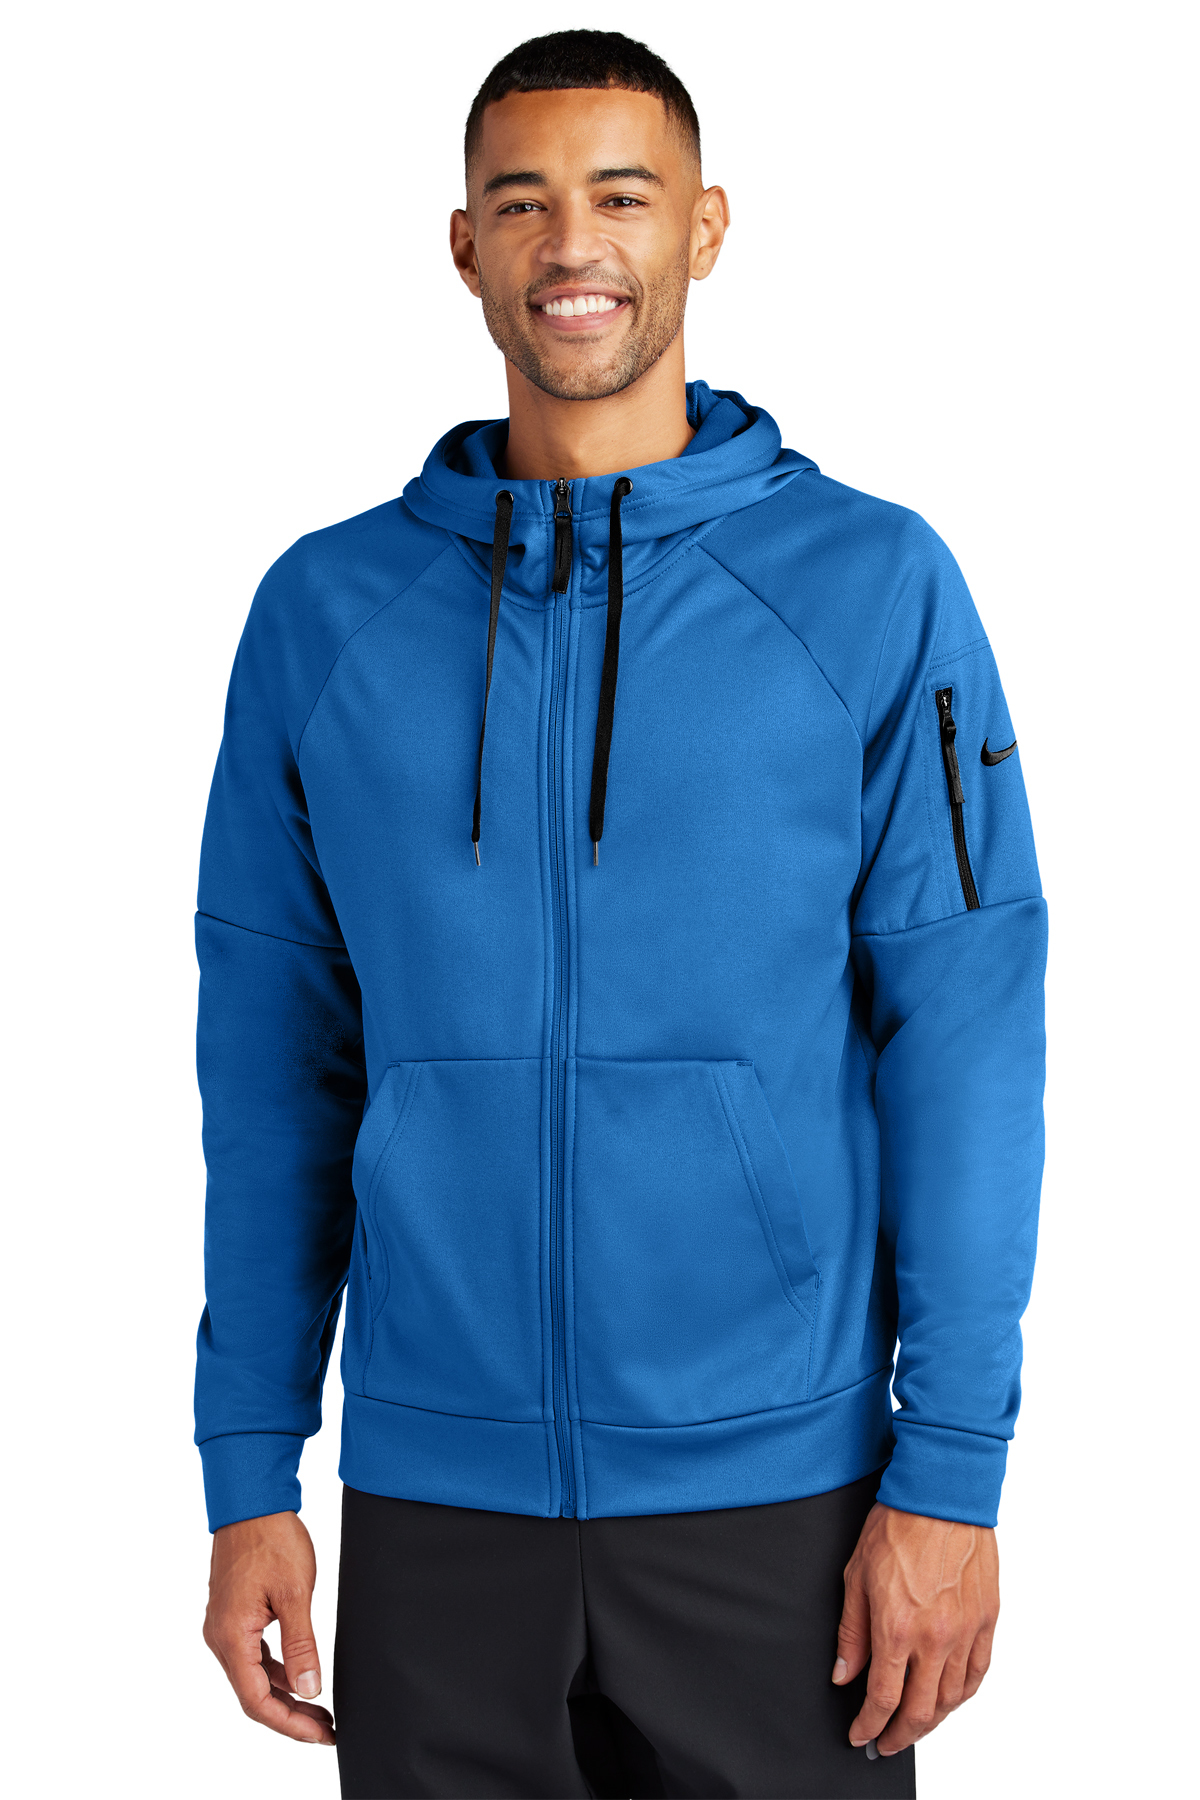 Nike Therma-FIT Pocket Full-Zip Fleece Hoodie | Product | SanMar